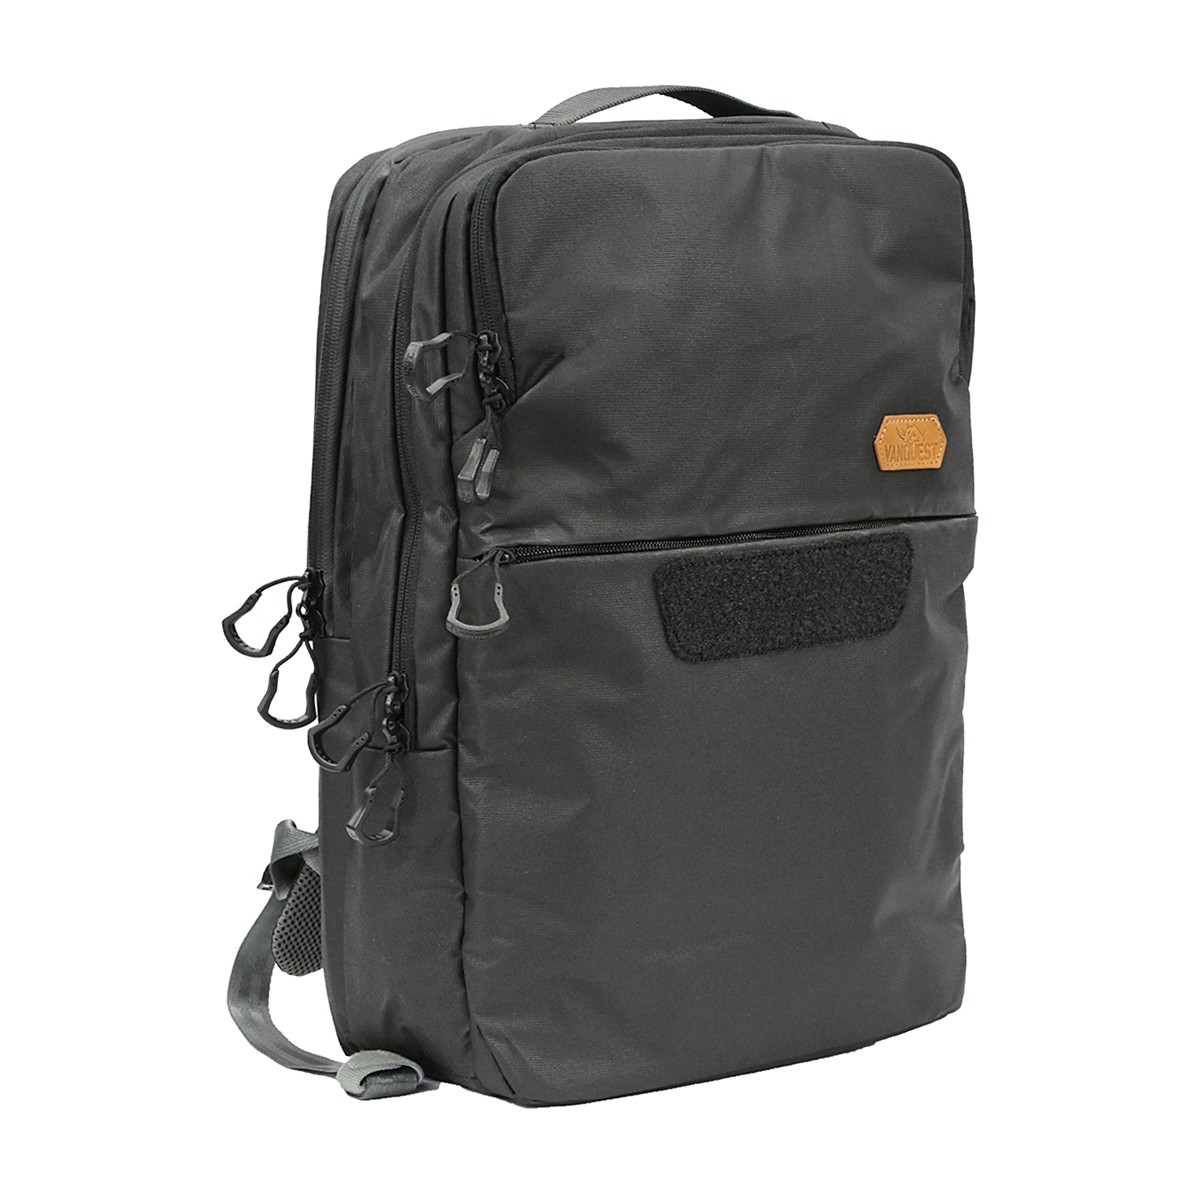 https://cdn.mukama.com/45053/vanquest-addax-25-backpack.jpg